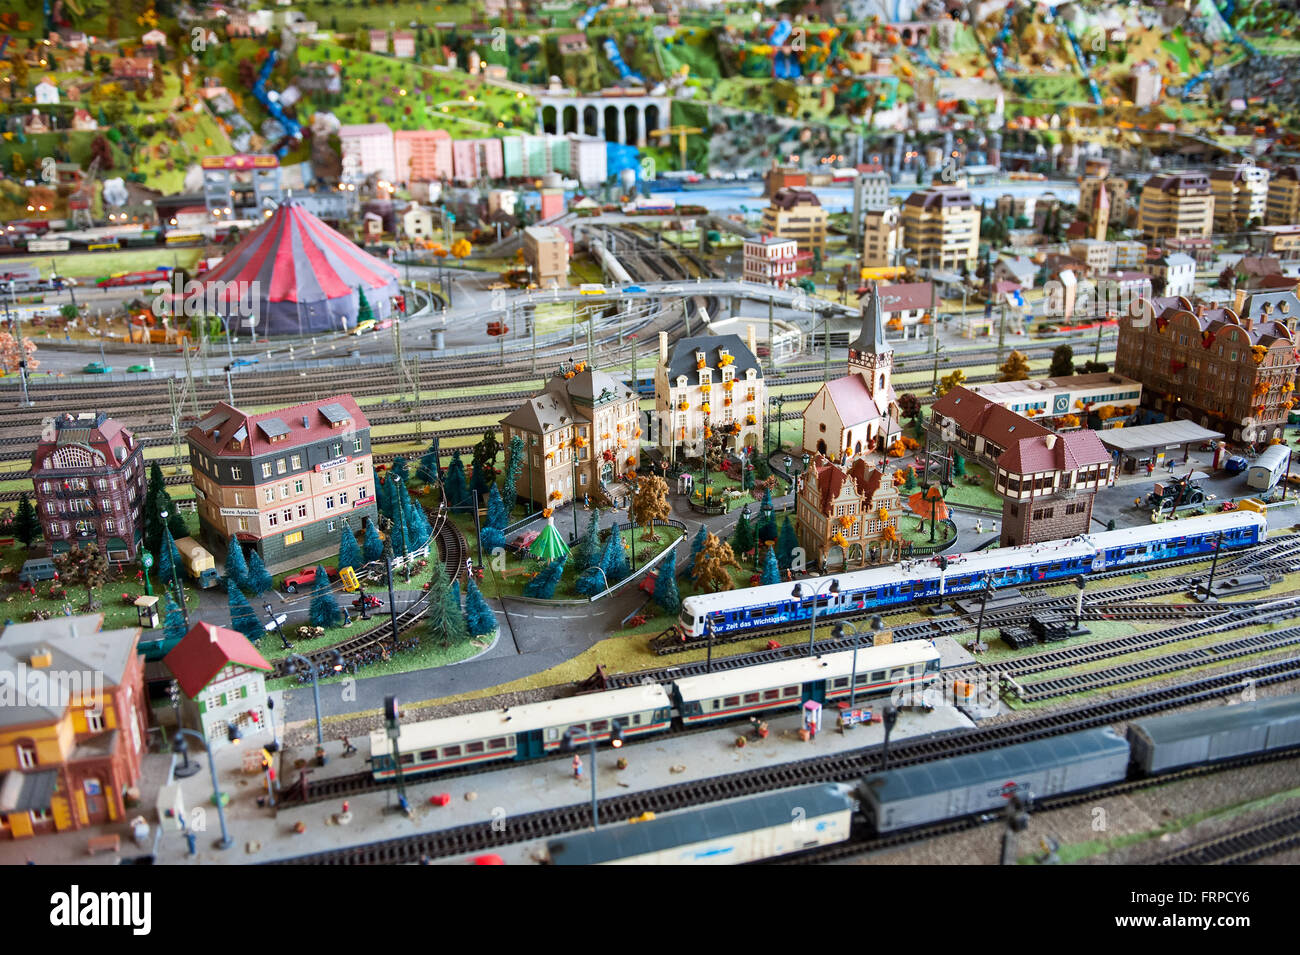 Electric model railroad afficher avec différents trains de voyageurs, les bâtiments et autres paysage Banque D'Images